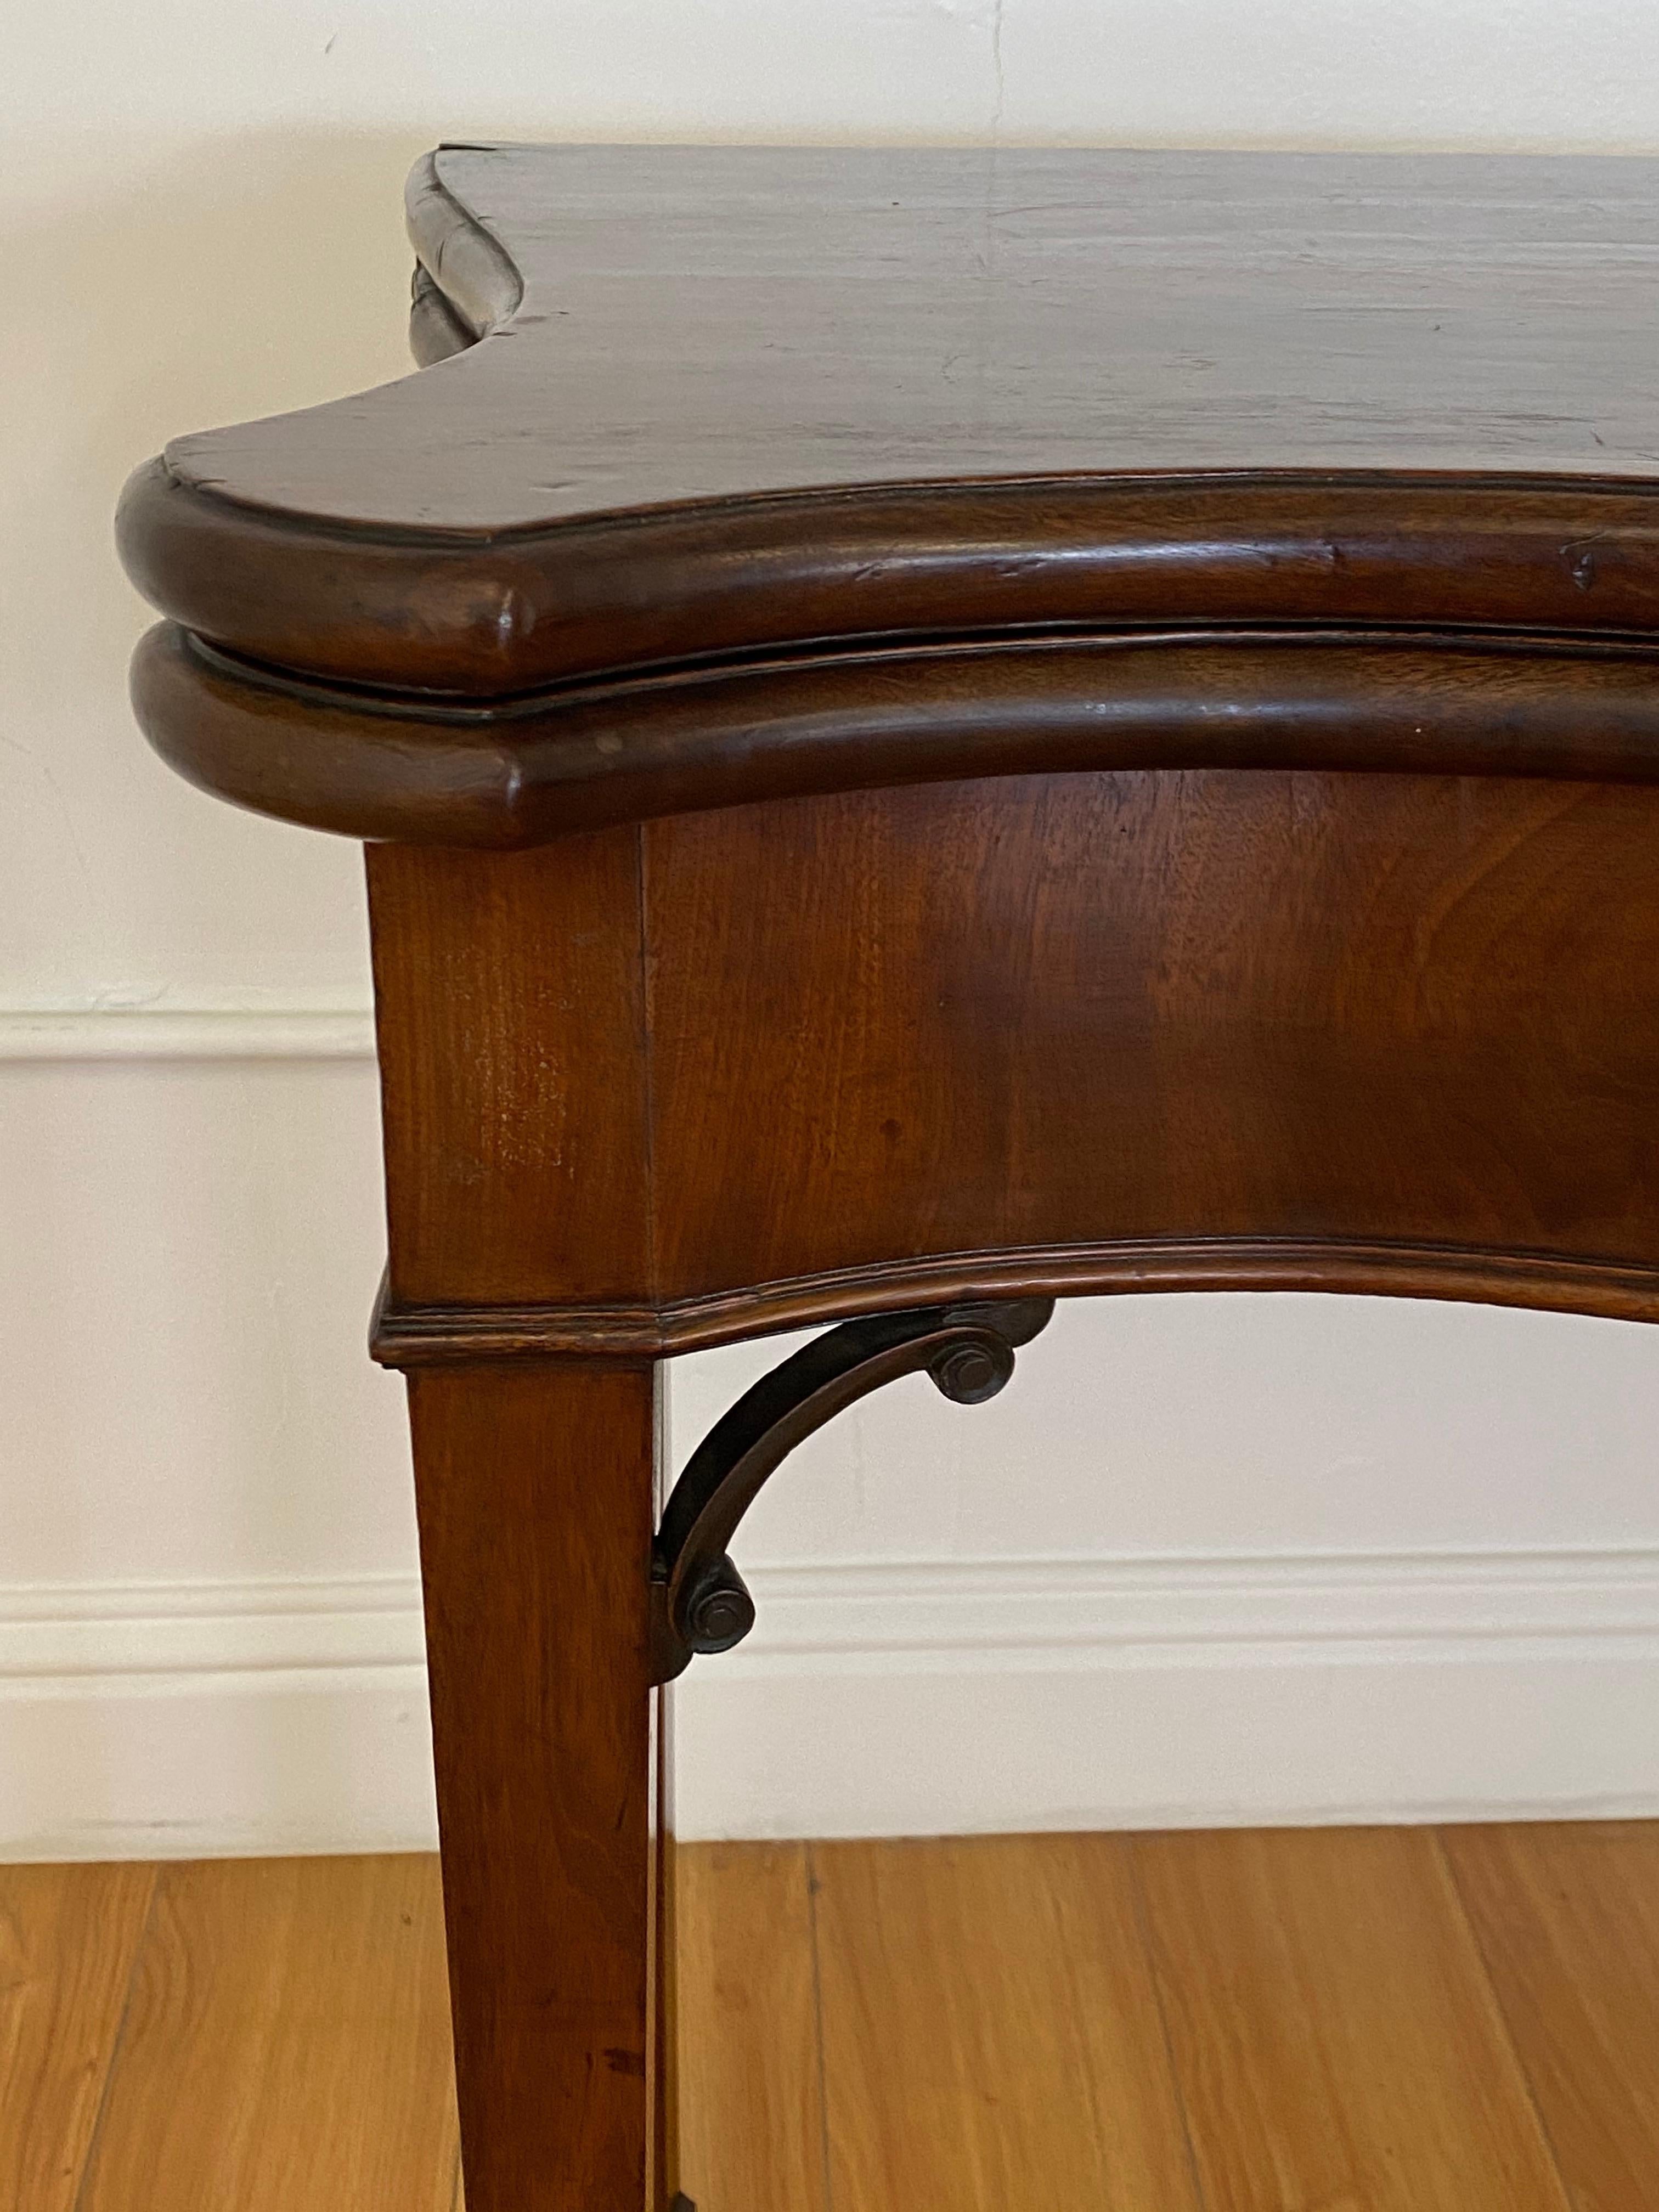 19th century mahogany console flip top games table.

Hand crafted flip top games table with felt top

Measures: 34